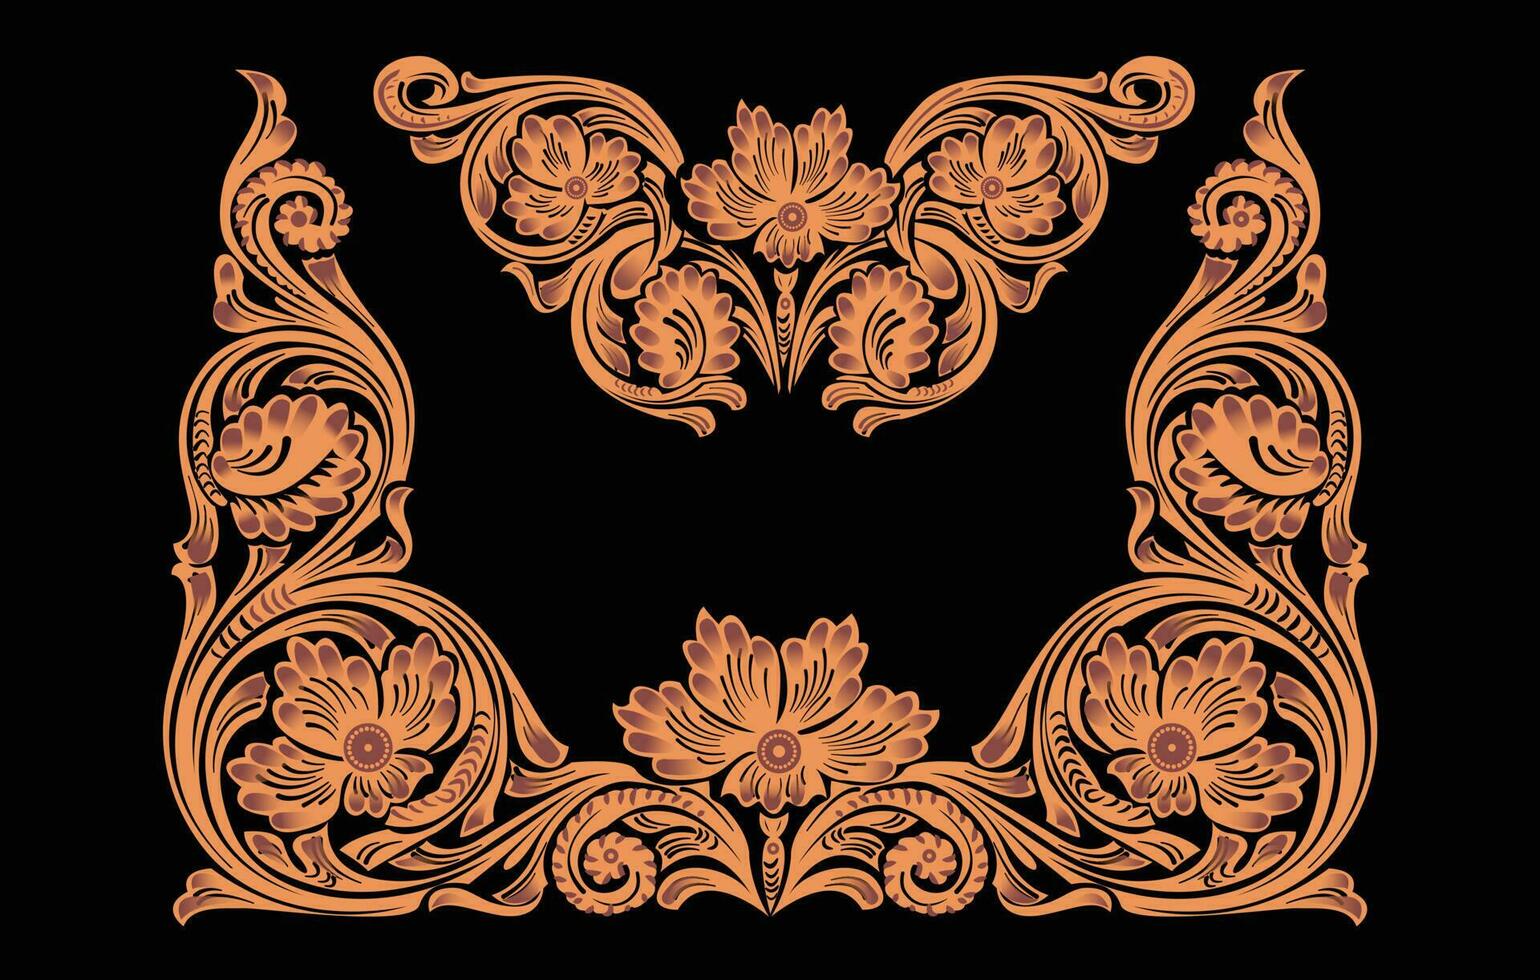 dekorativ Zier Hintergrund, Hand gezeichnet Blumen- Gekritzel Muster mit Spitze rahmen. Stammes- ethnisch Mandala Ornament. vektor